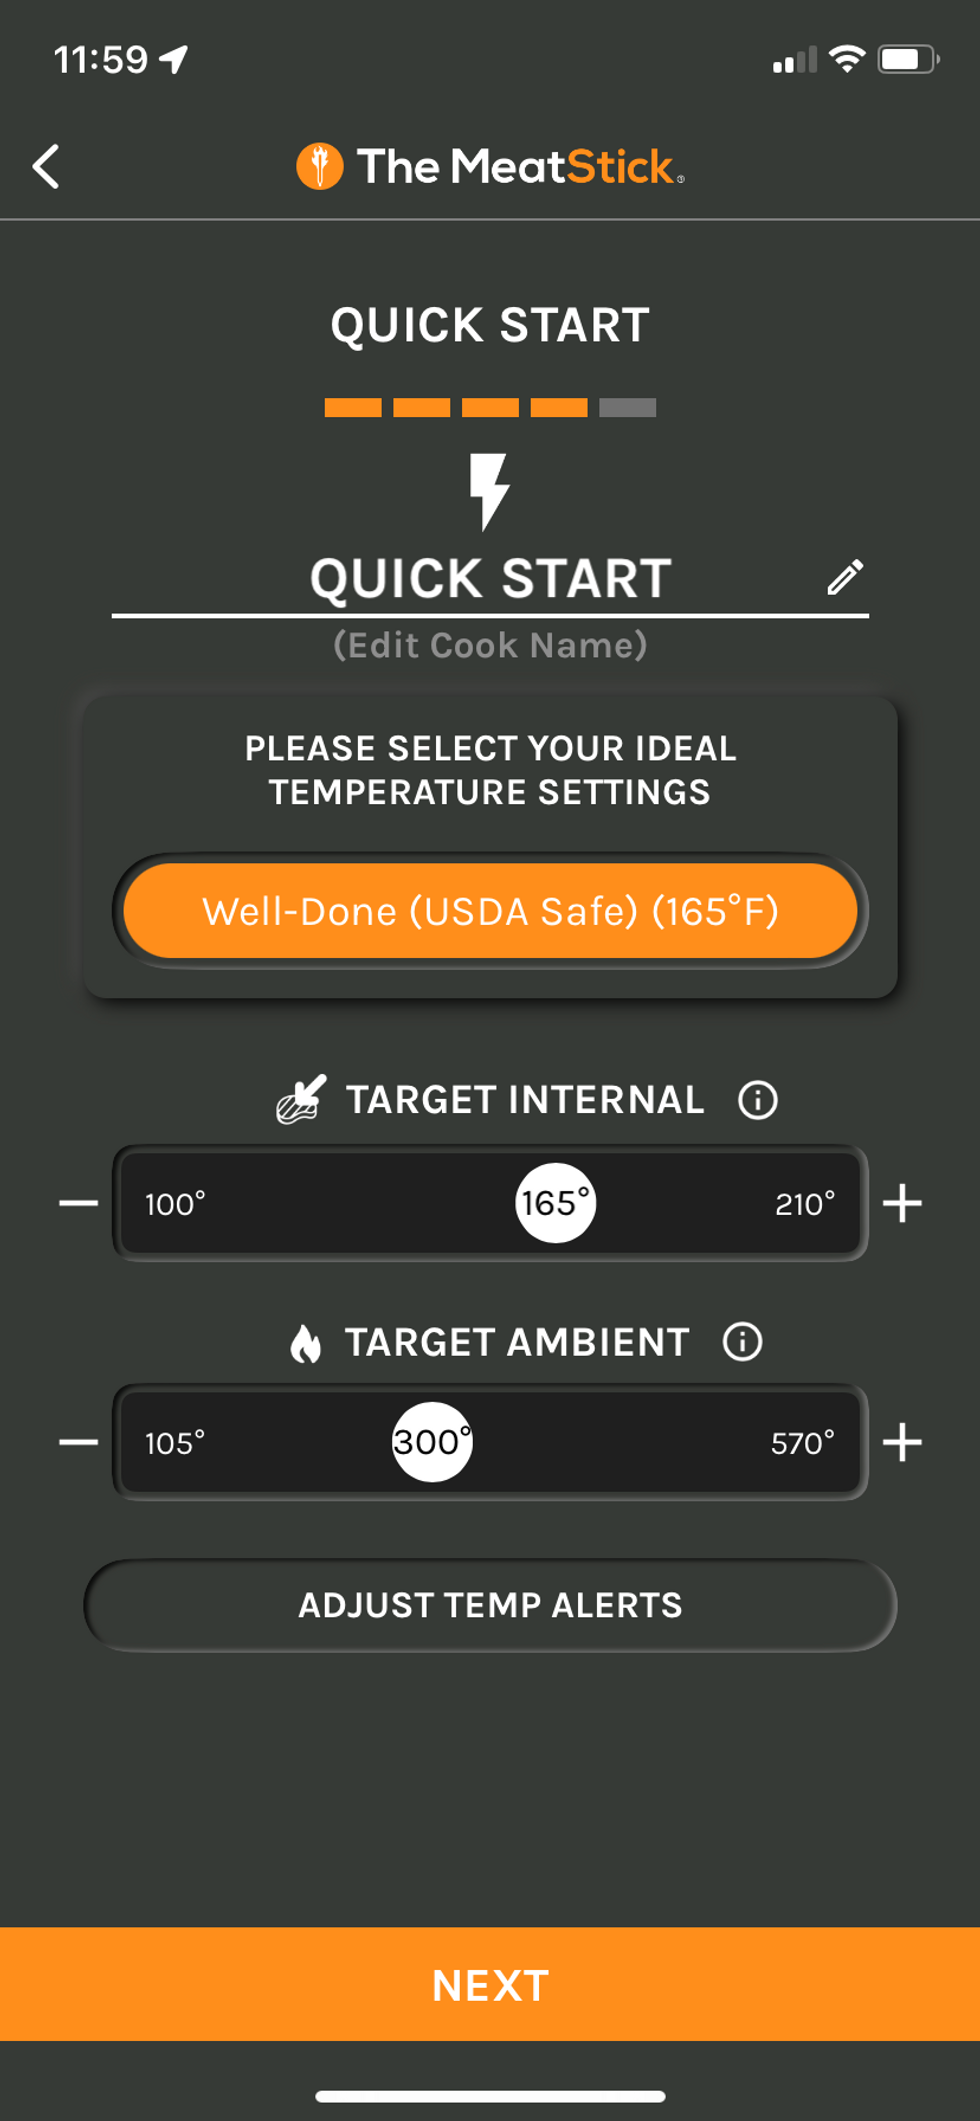 a screenshot of MeatStick app Quick Start Guide